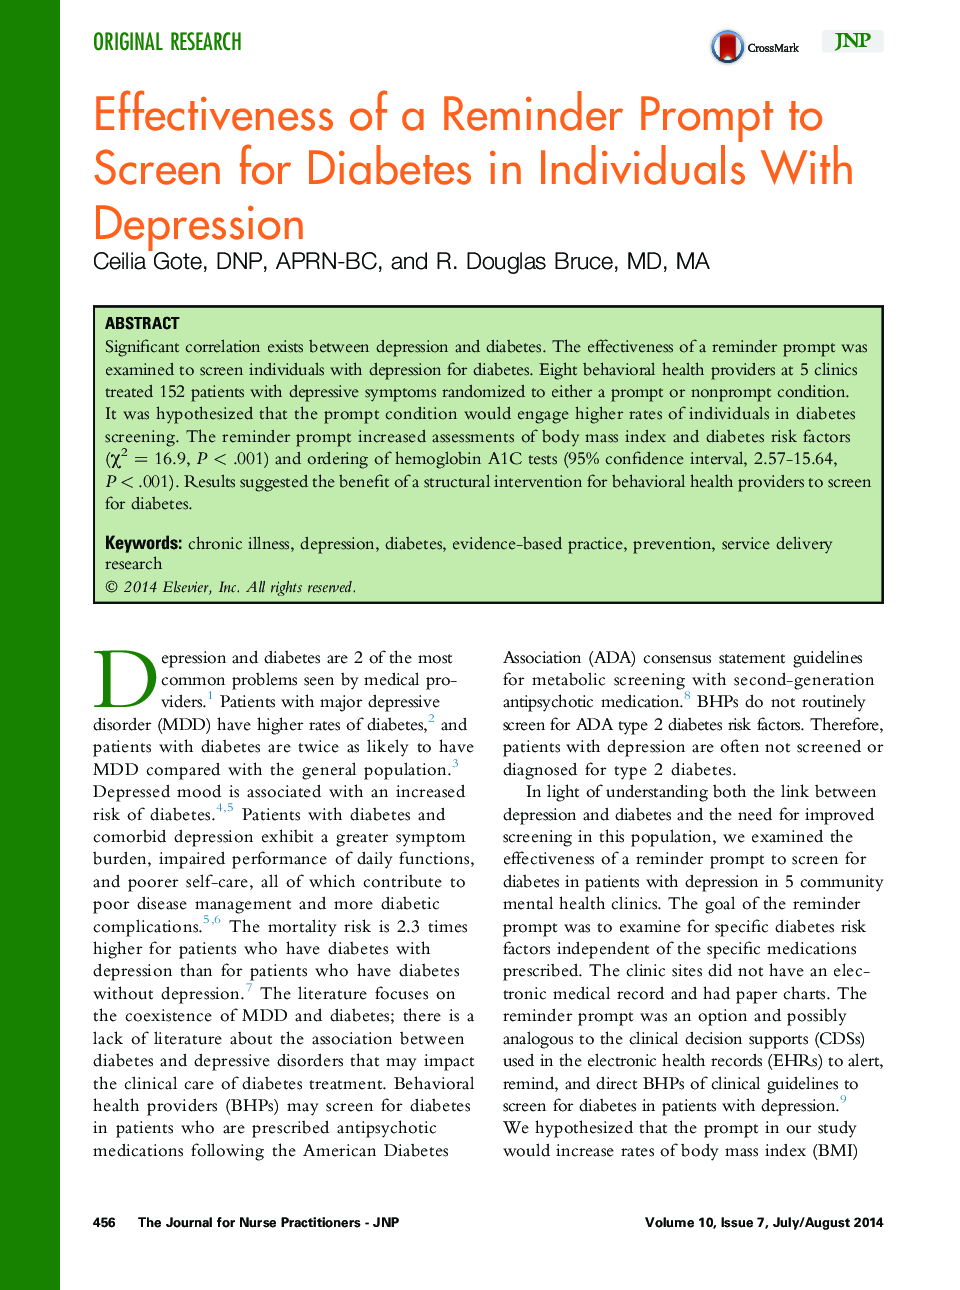 اثربخشی یک یادآوری سریع به صفحه نمایش دیابت در افراد مبتلا به افسردگی 